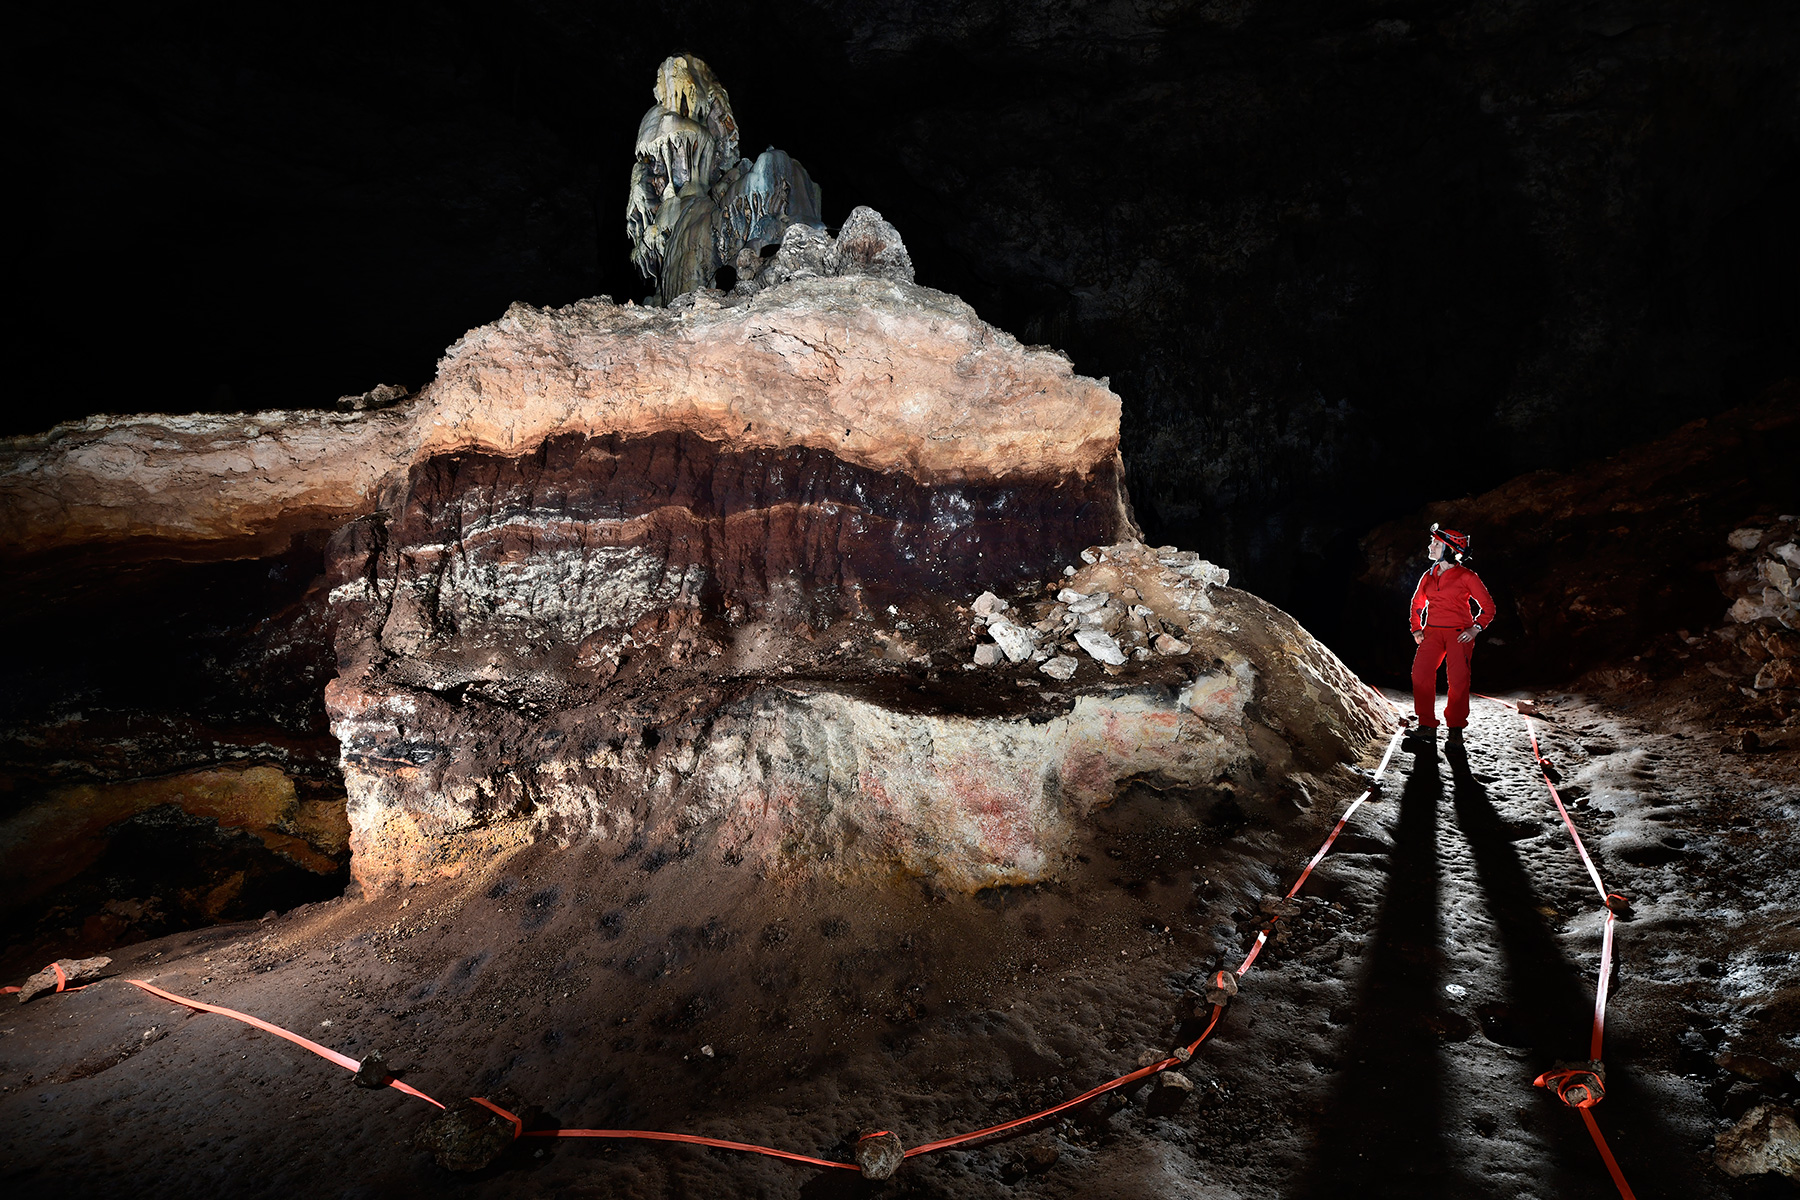 Slaughter Canyon Cave (USA - Nouveau Mexique) - "The Cake" : monticule composé de dépôts de guano surmontés de couches de calcite